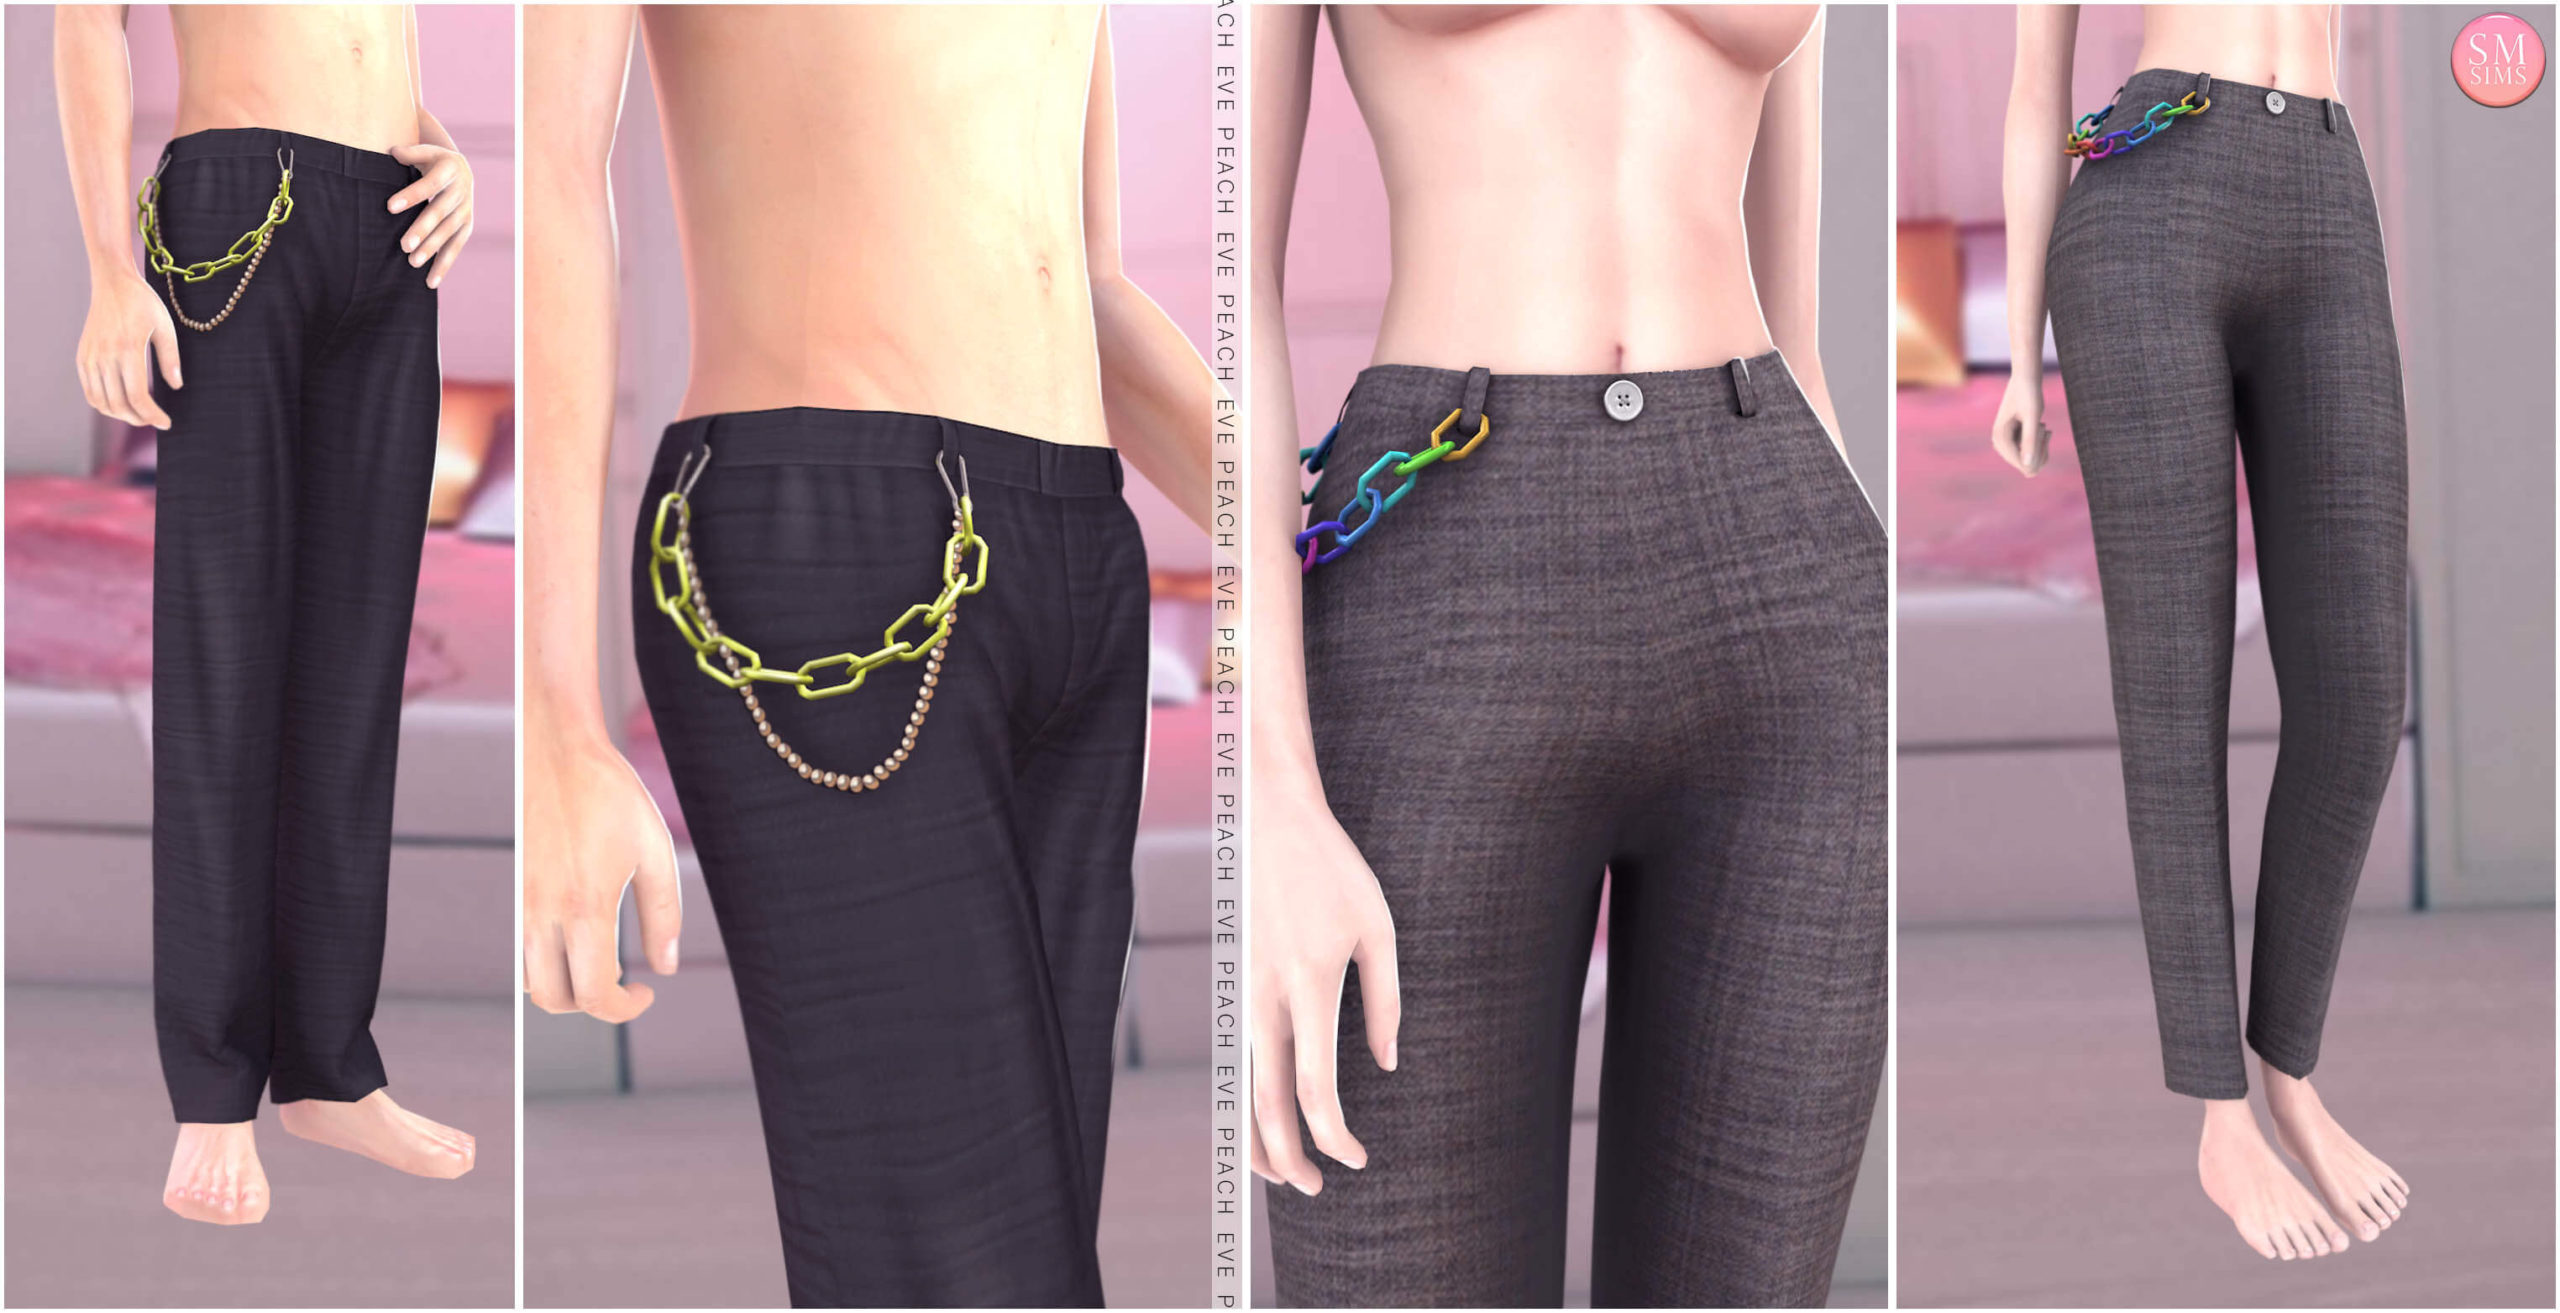 Sims 4 Body Chain